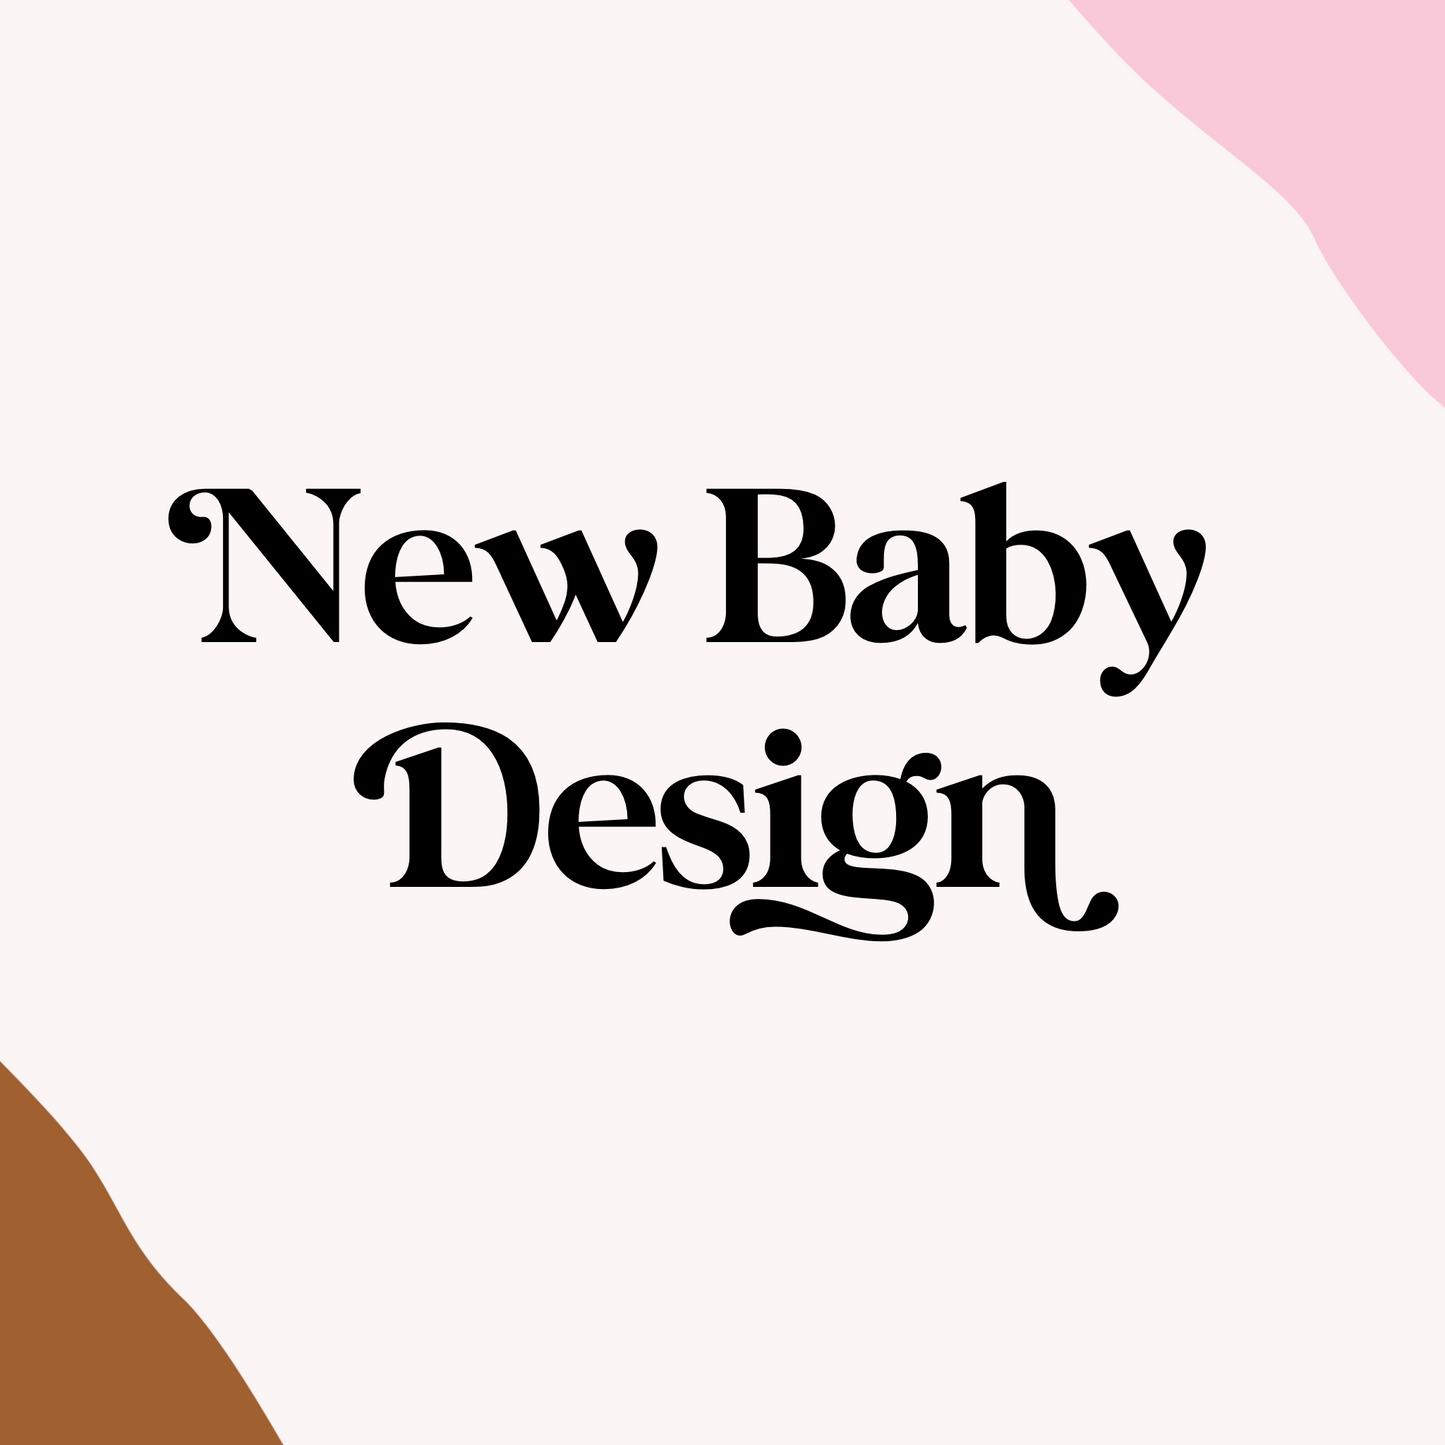 New Baby Design